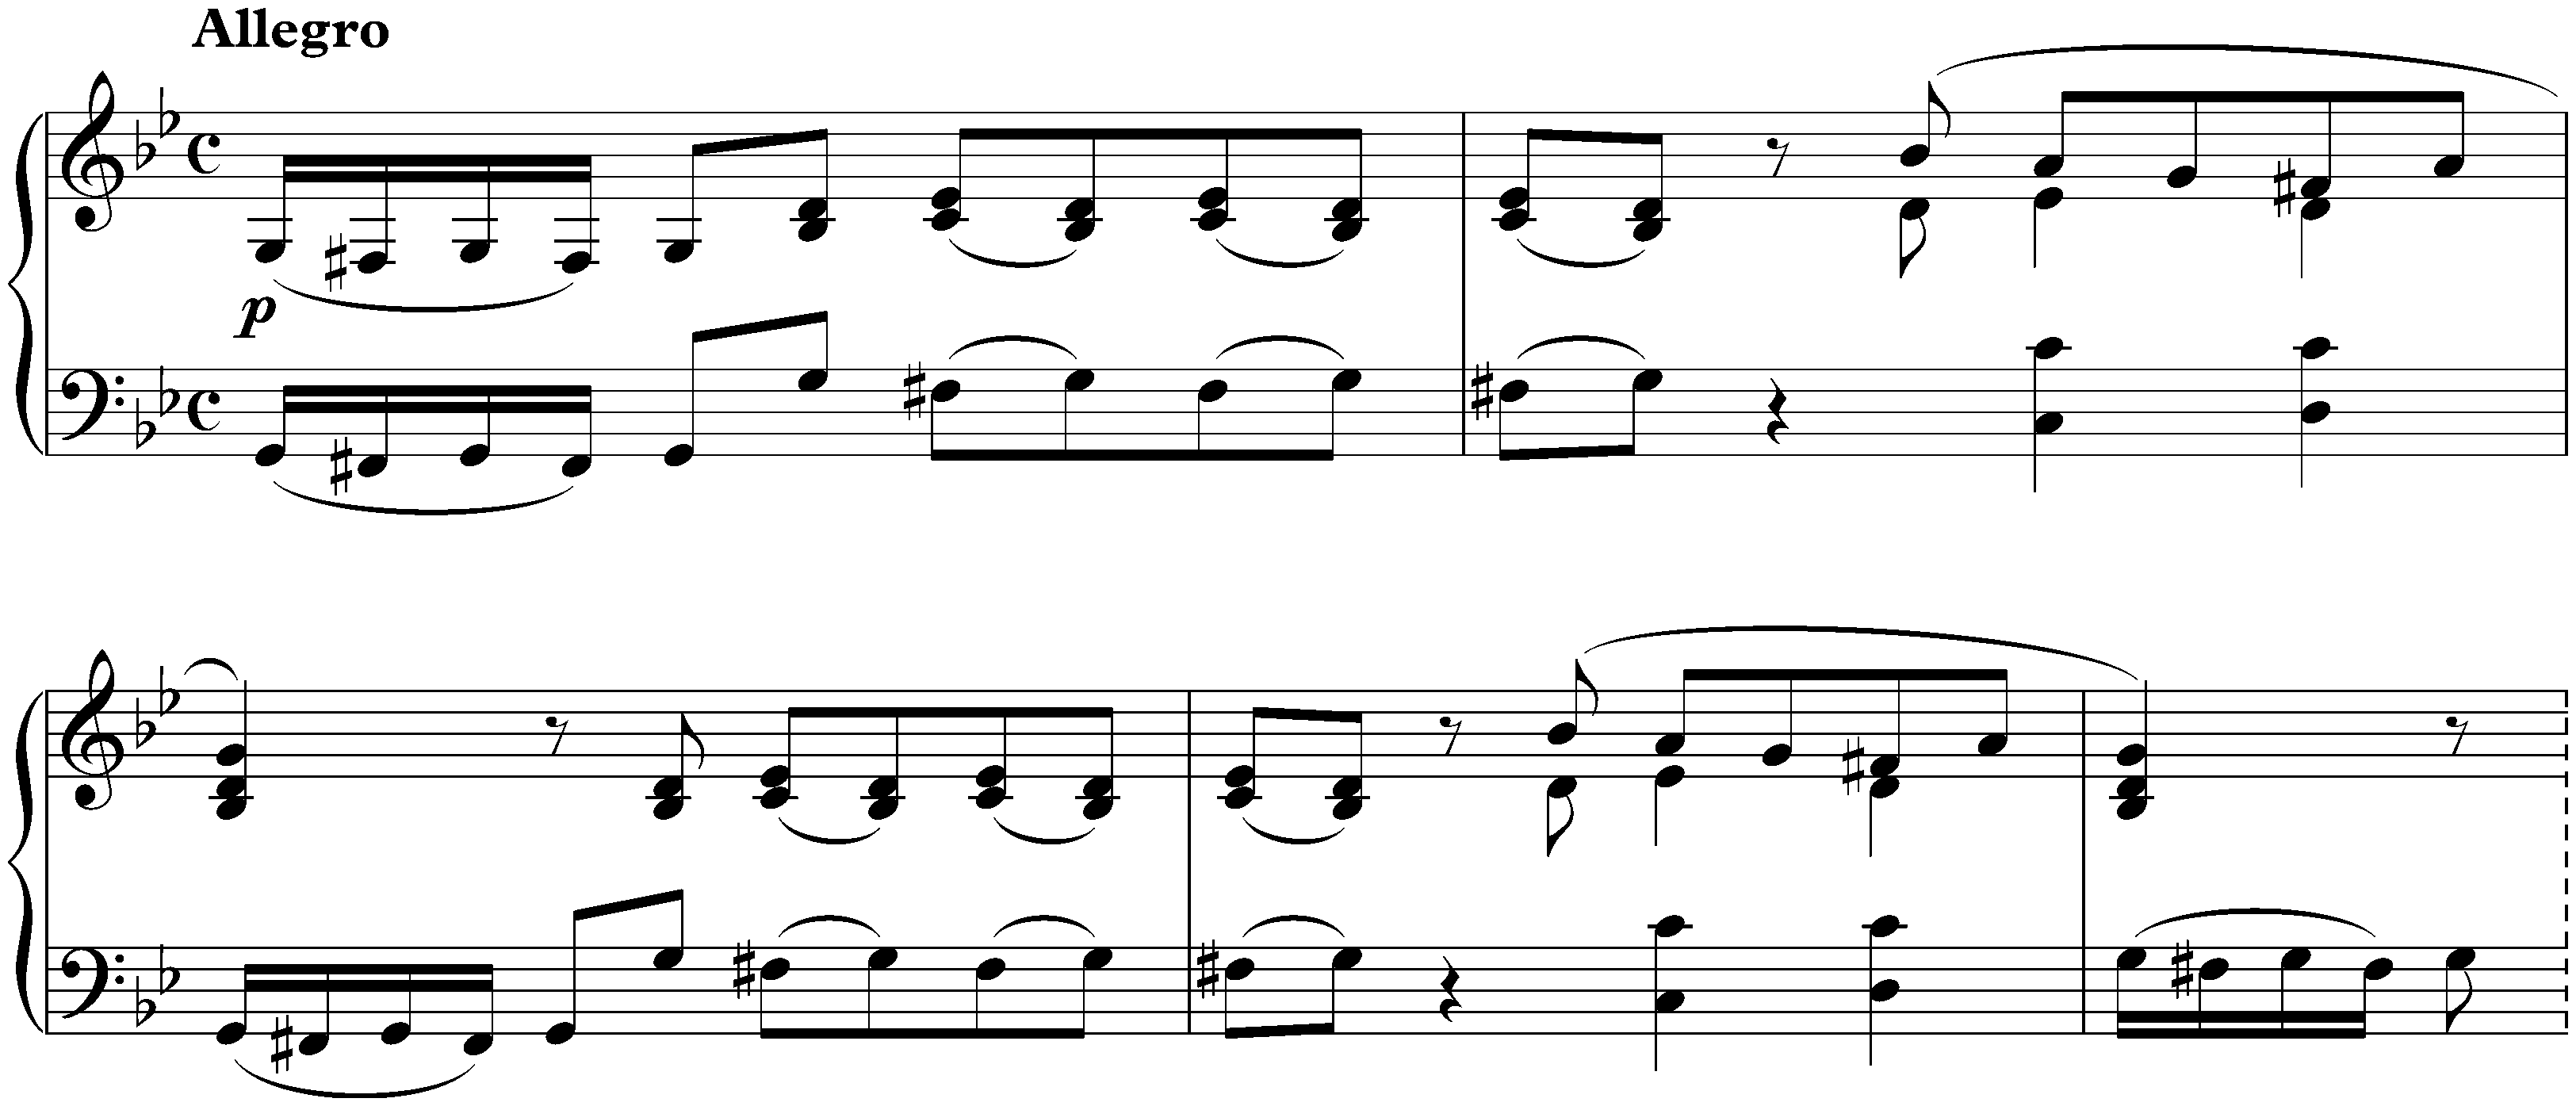 Sonata in G minor, op. 105; 1. Allegro